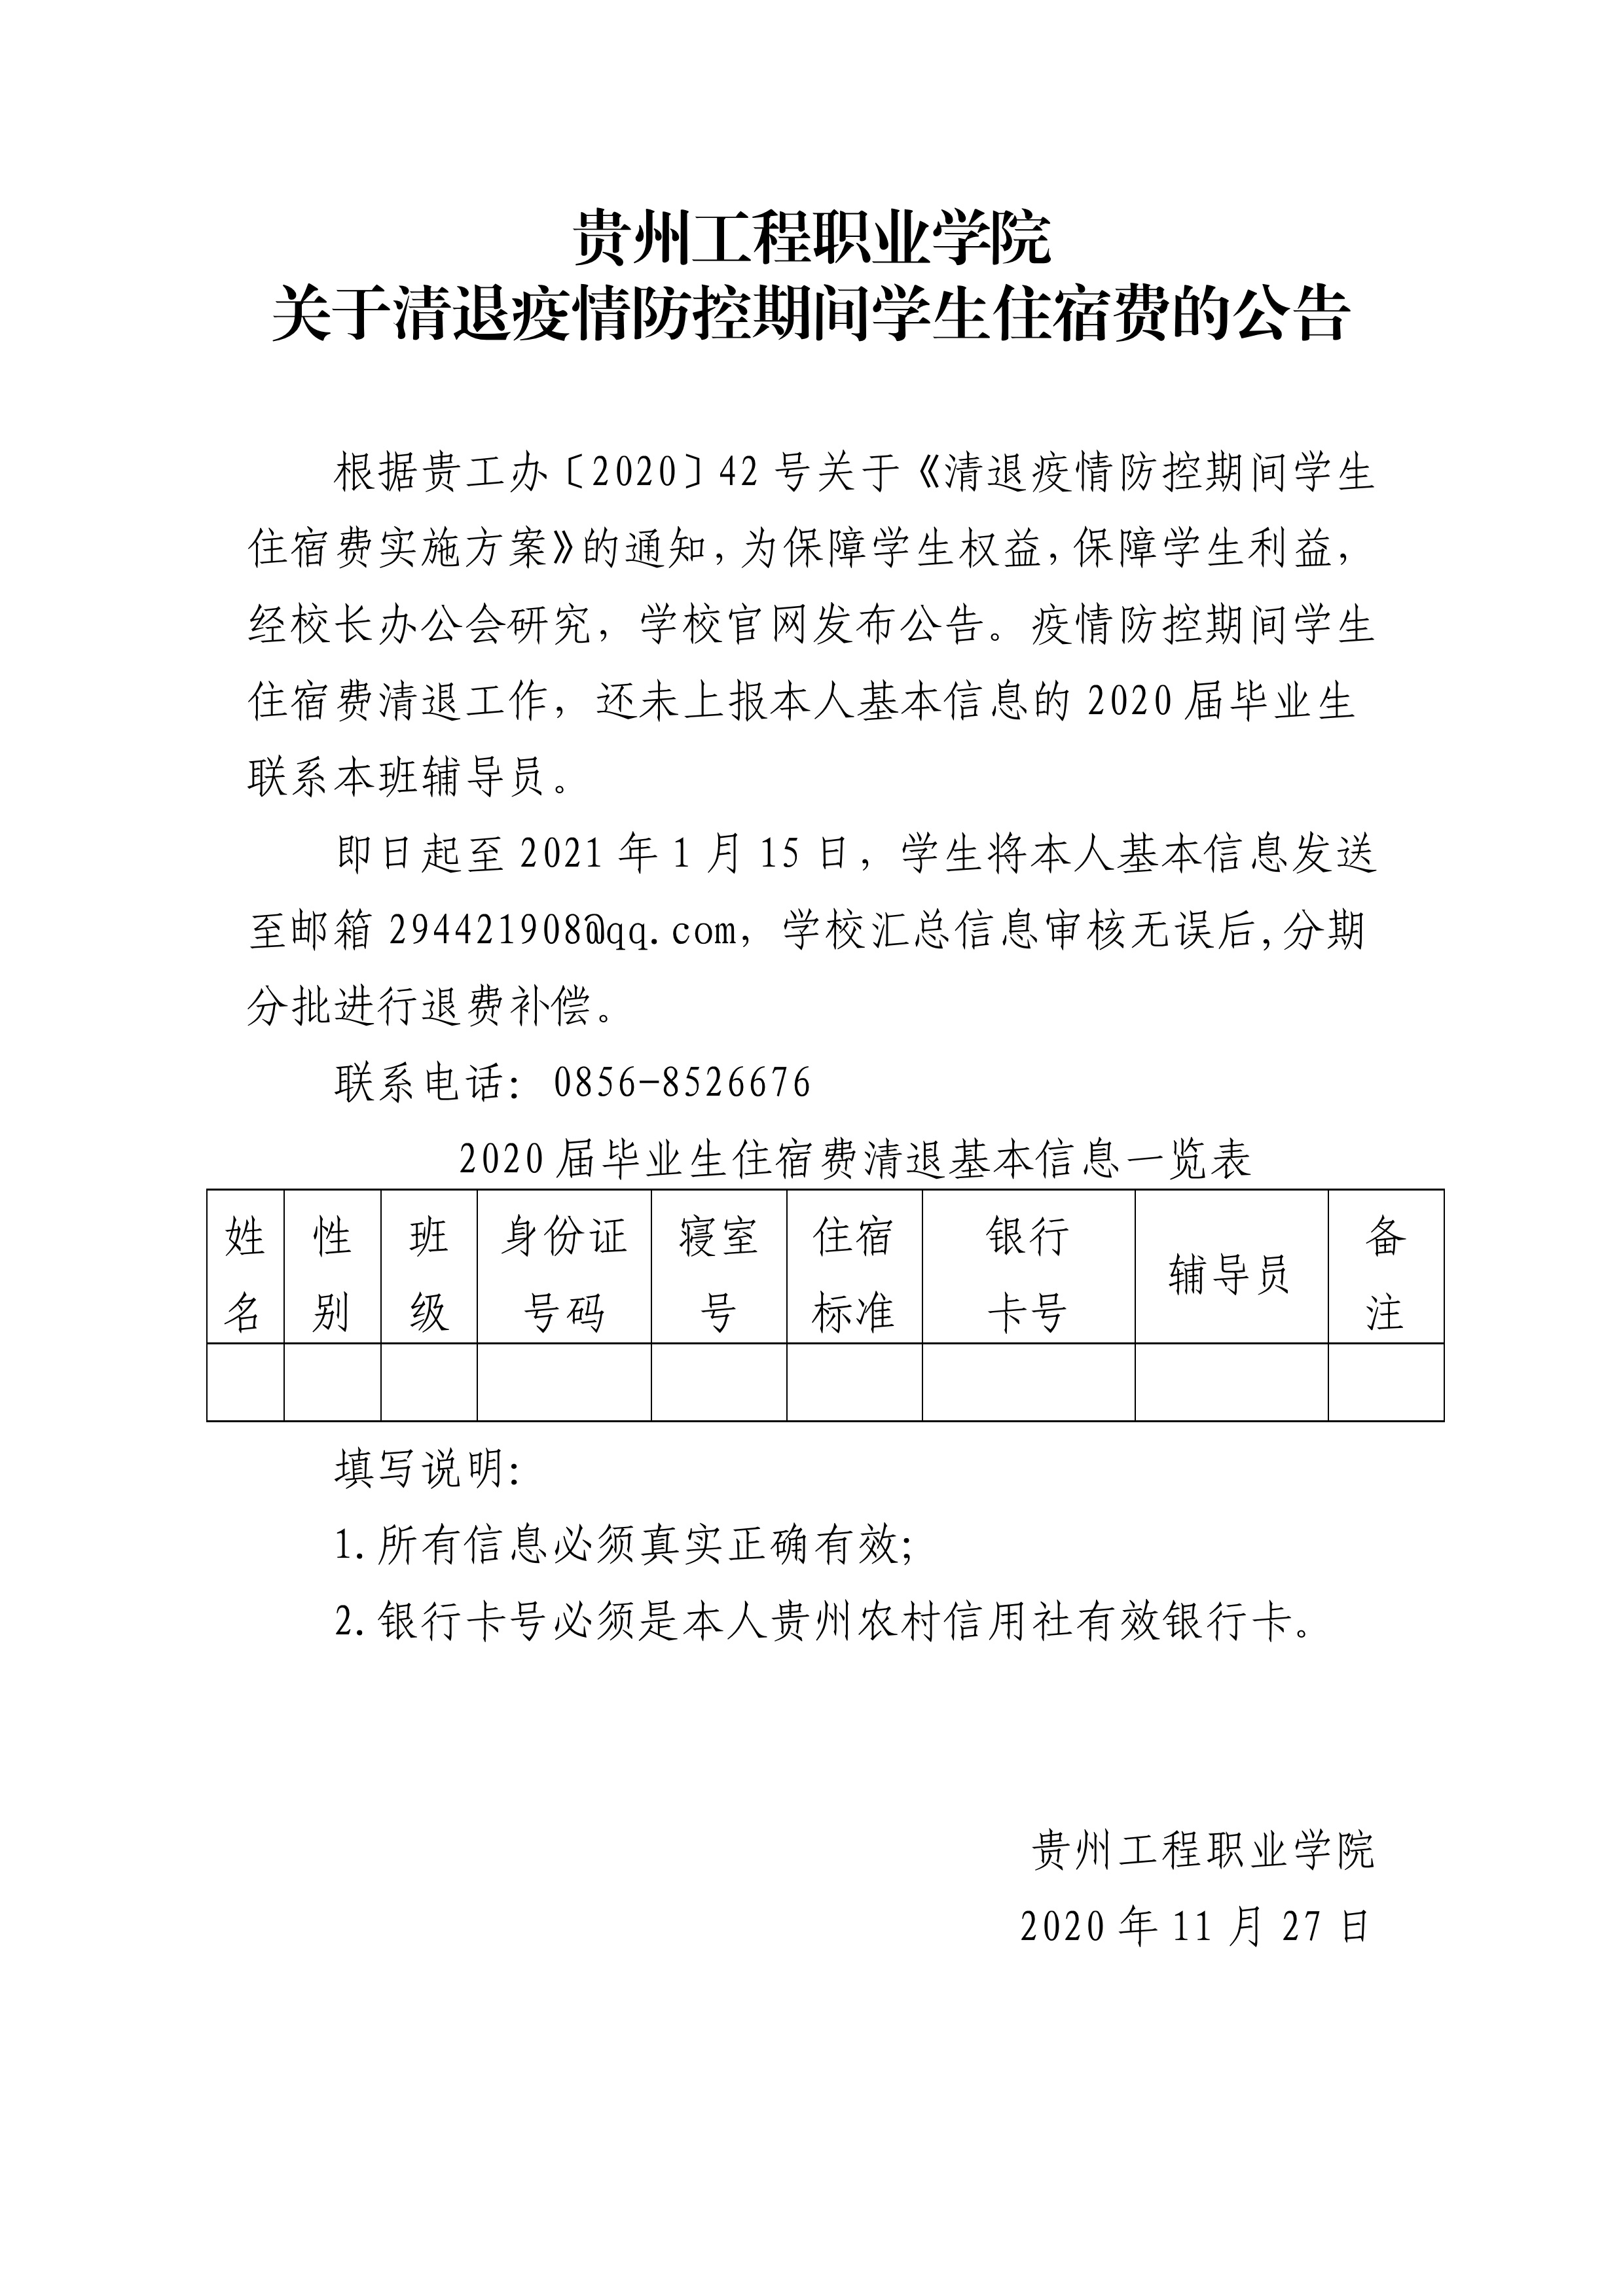 贵州工程职业学院 关于清退疫情防控期间学生住宿费的公告(图1)